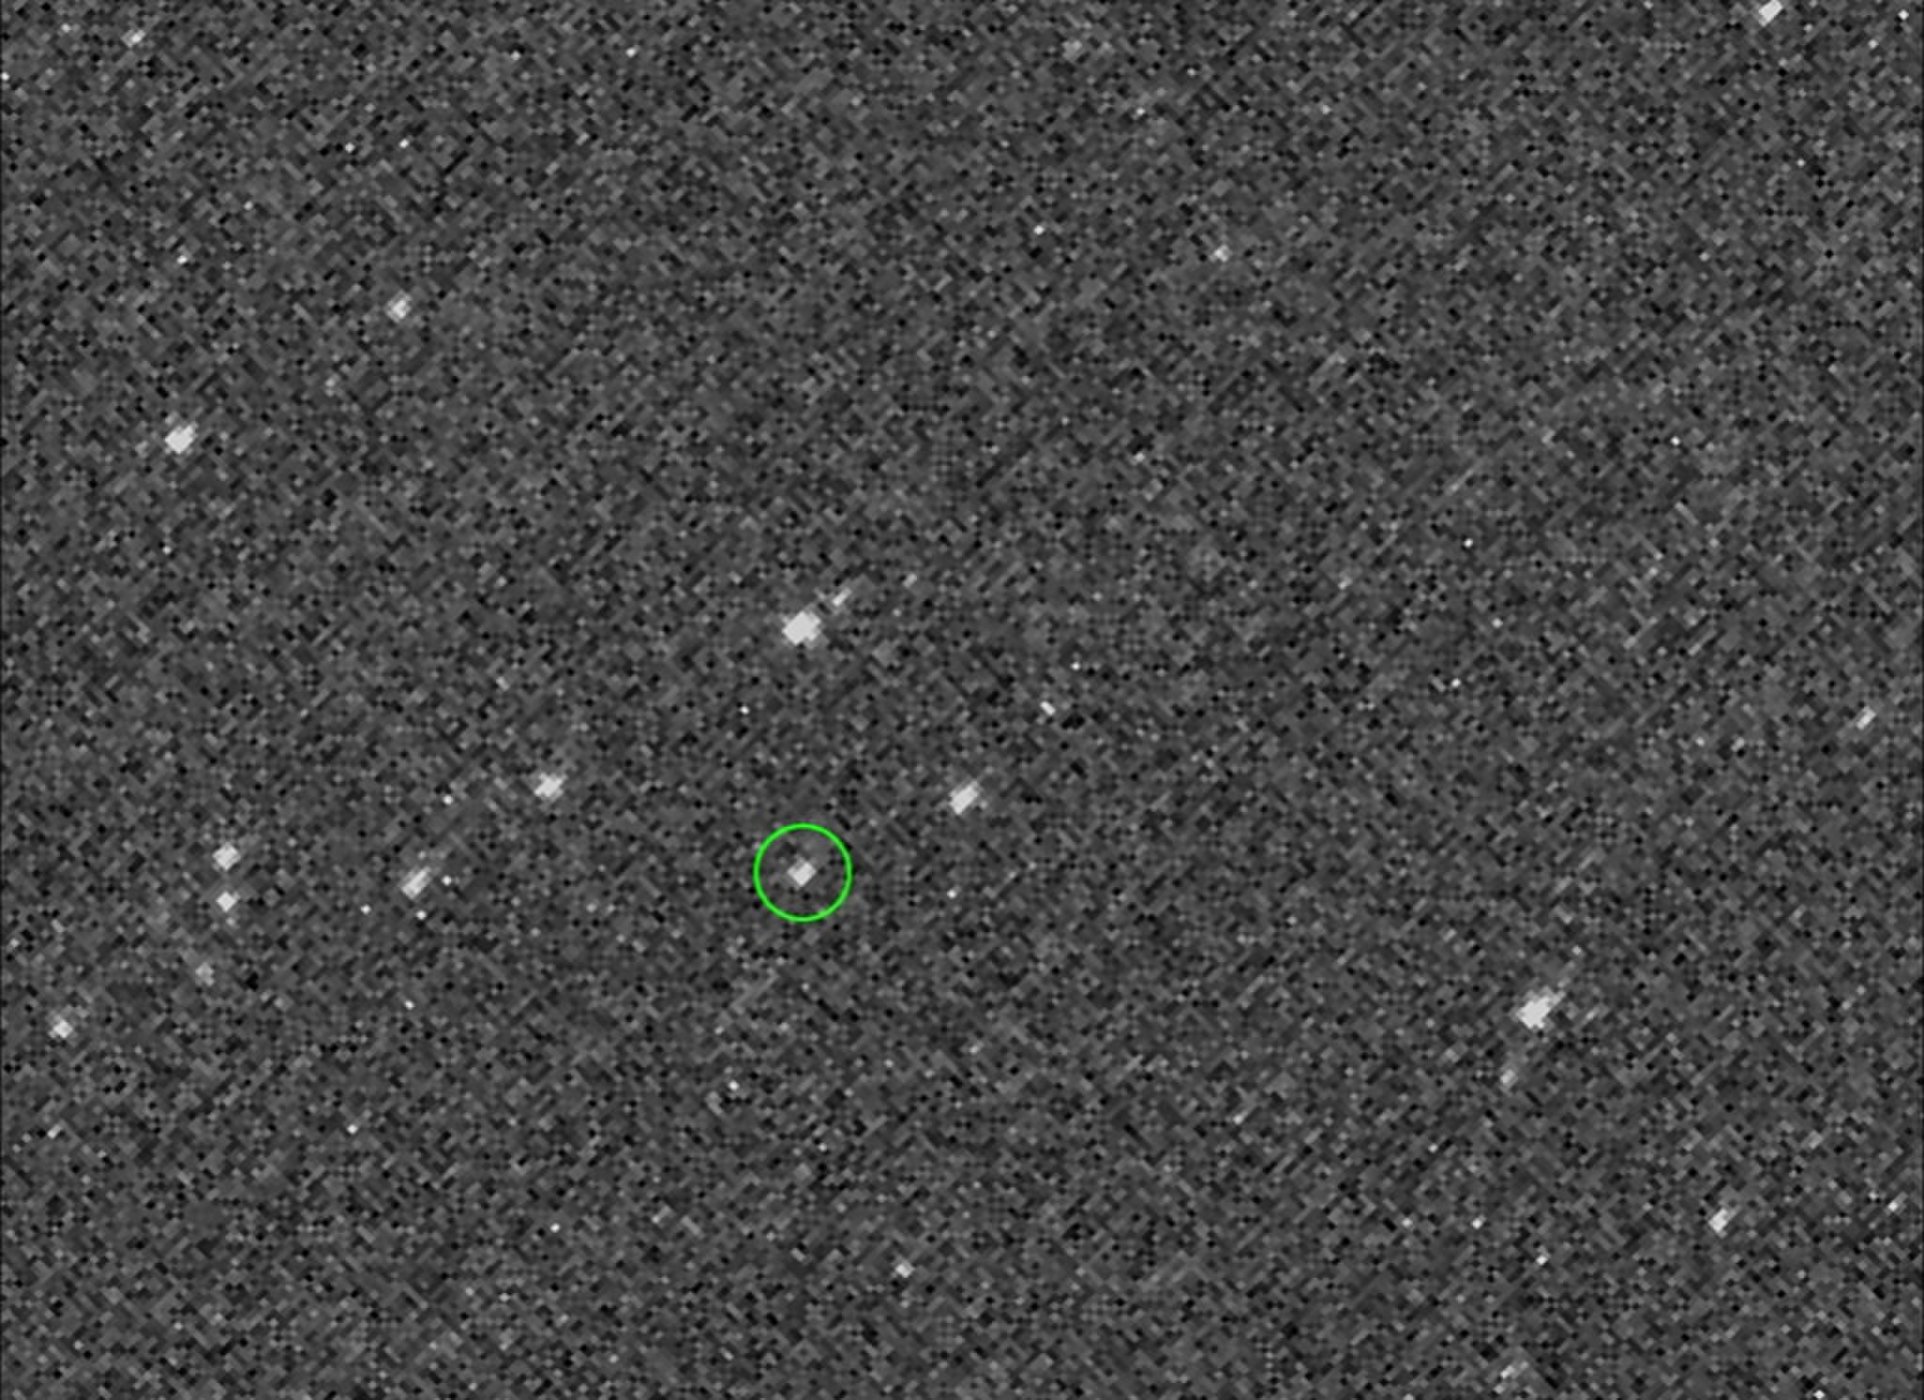 Asteroid-Sampling NASA Probe Gets 1st Look at Its Target